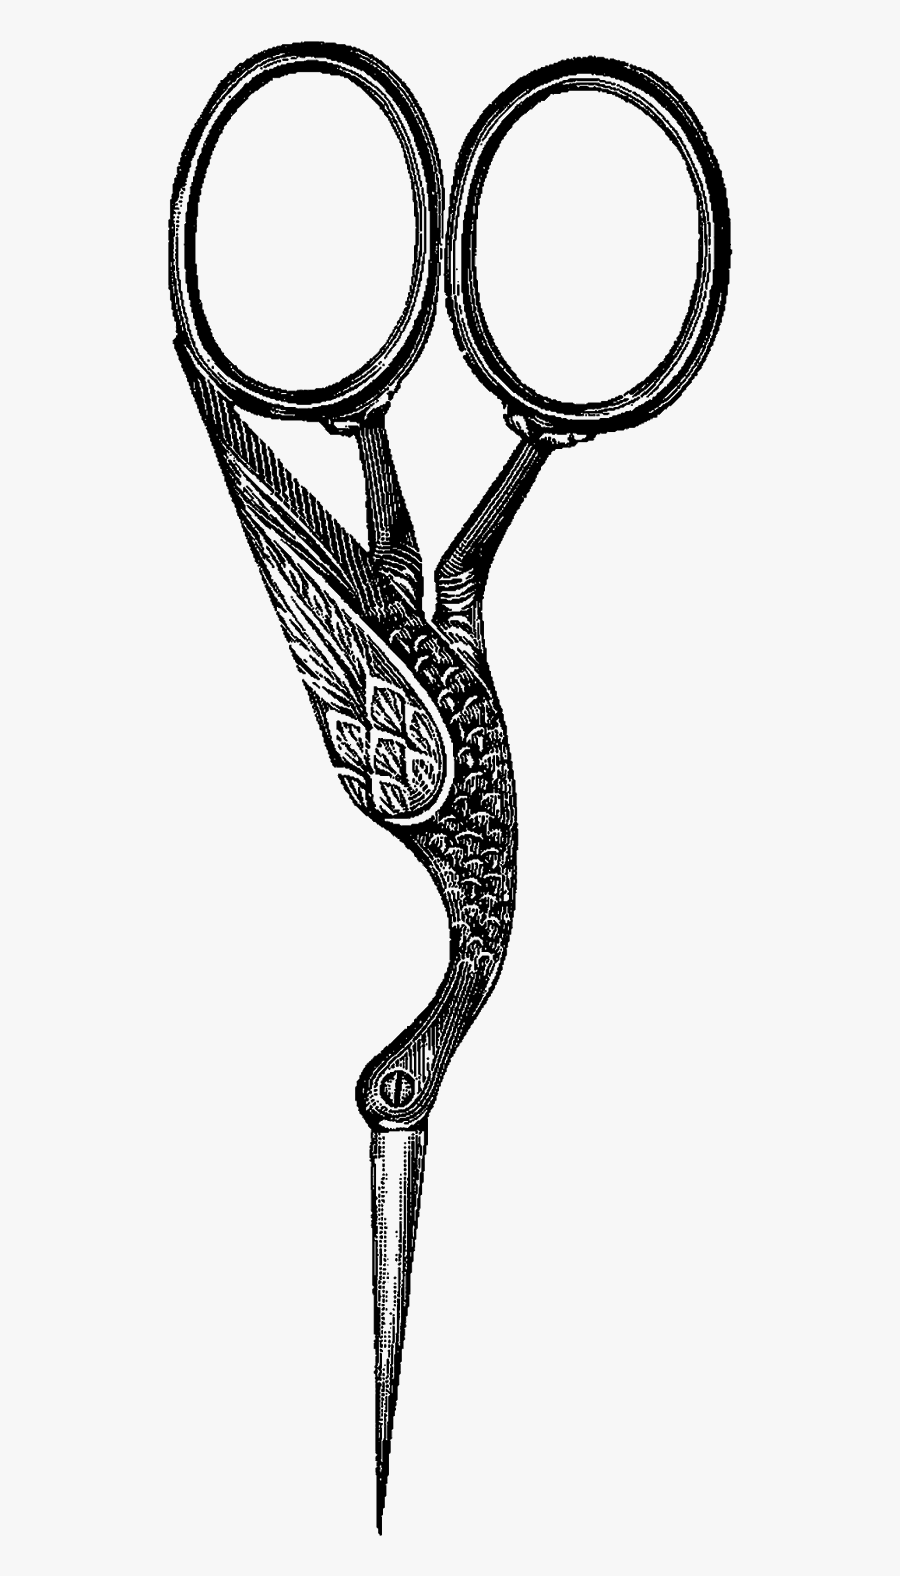 Digital Scissors Clip Art - Sew Scissors Clipart Png, Transparent Clipart